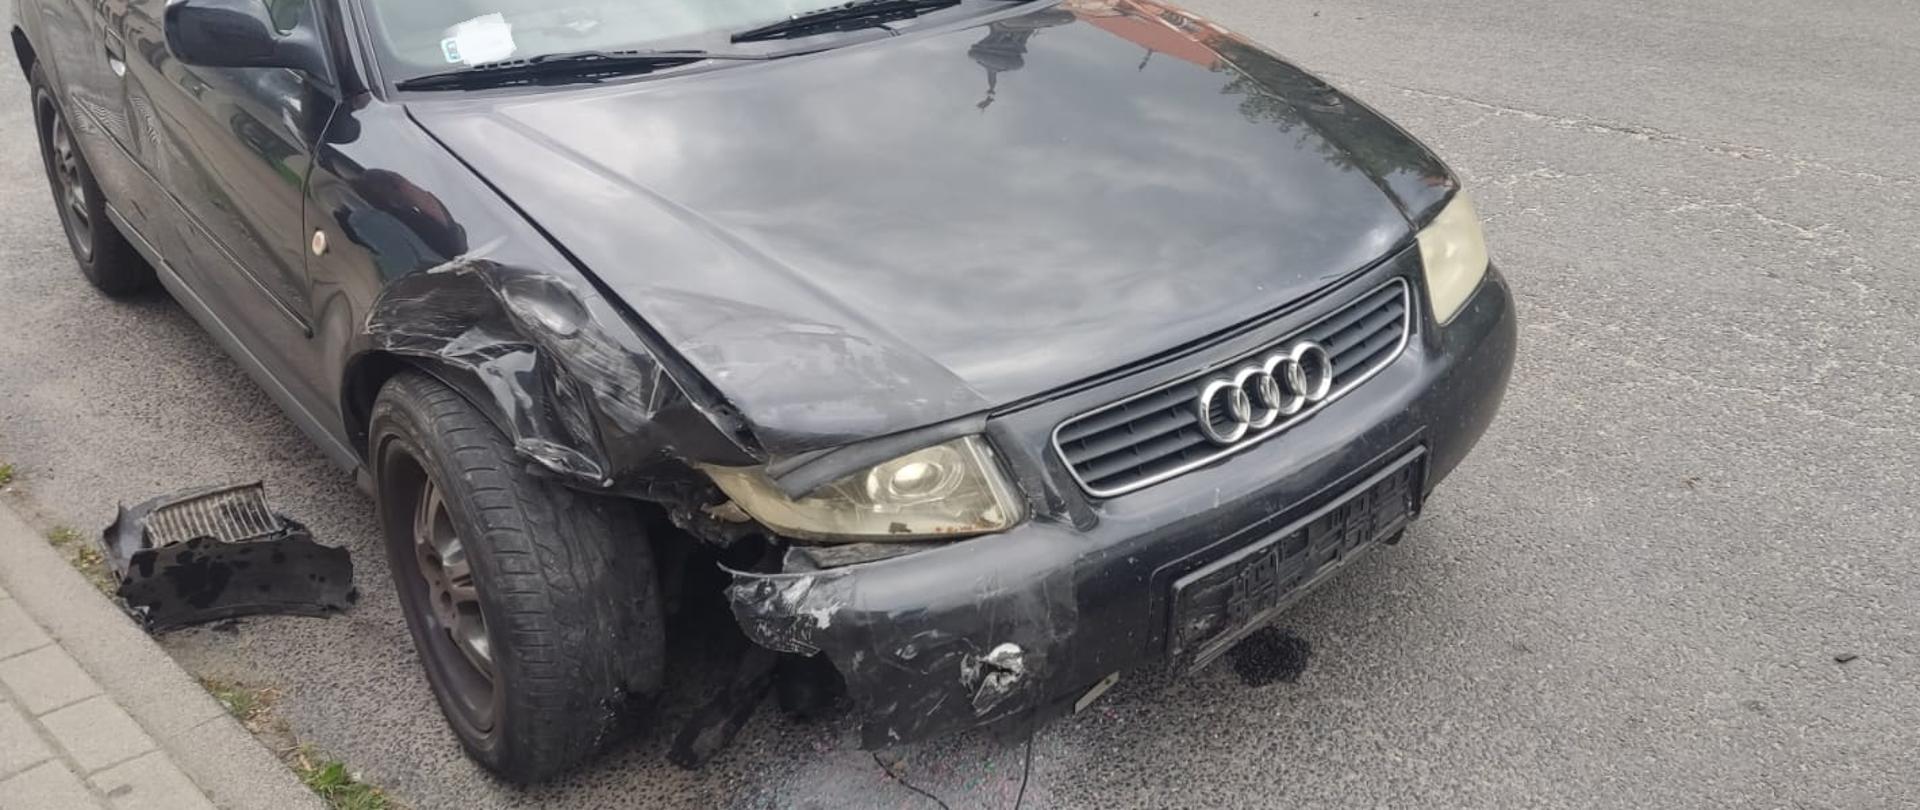 Samochód osobowy Audi po wypadku